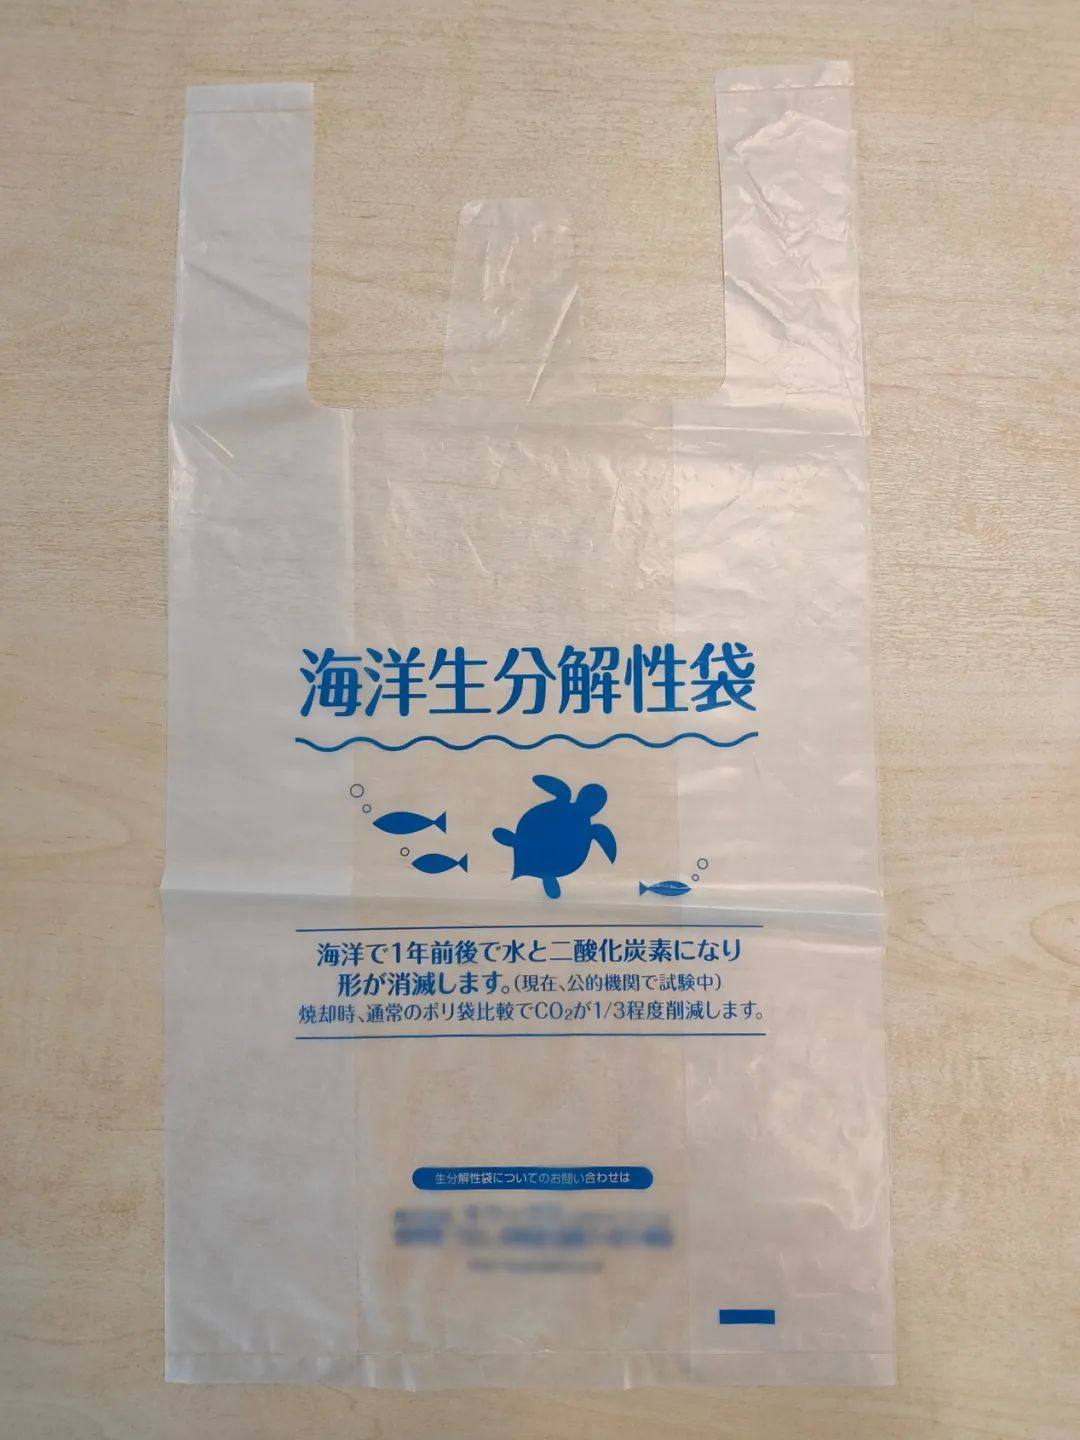 三菱化学开发出以PBS为原料的塑料袋，可在海洋中降解